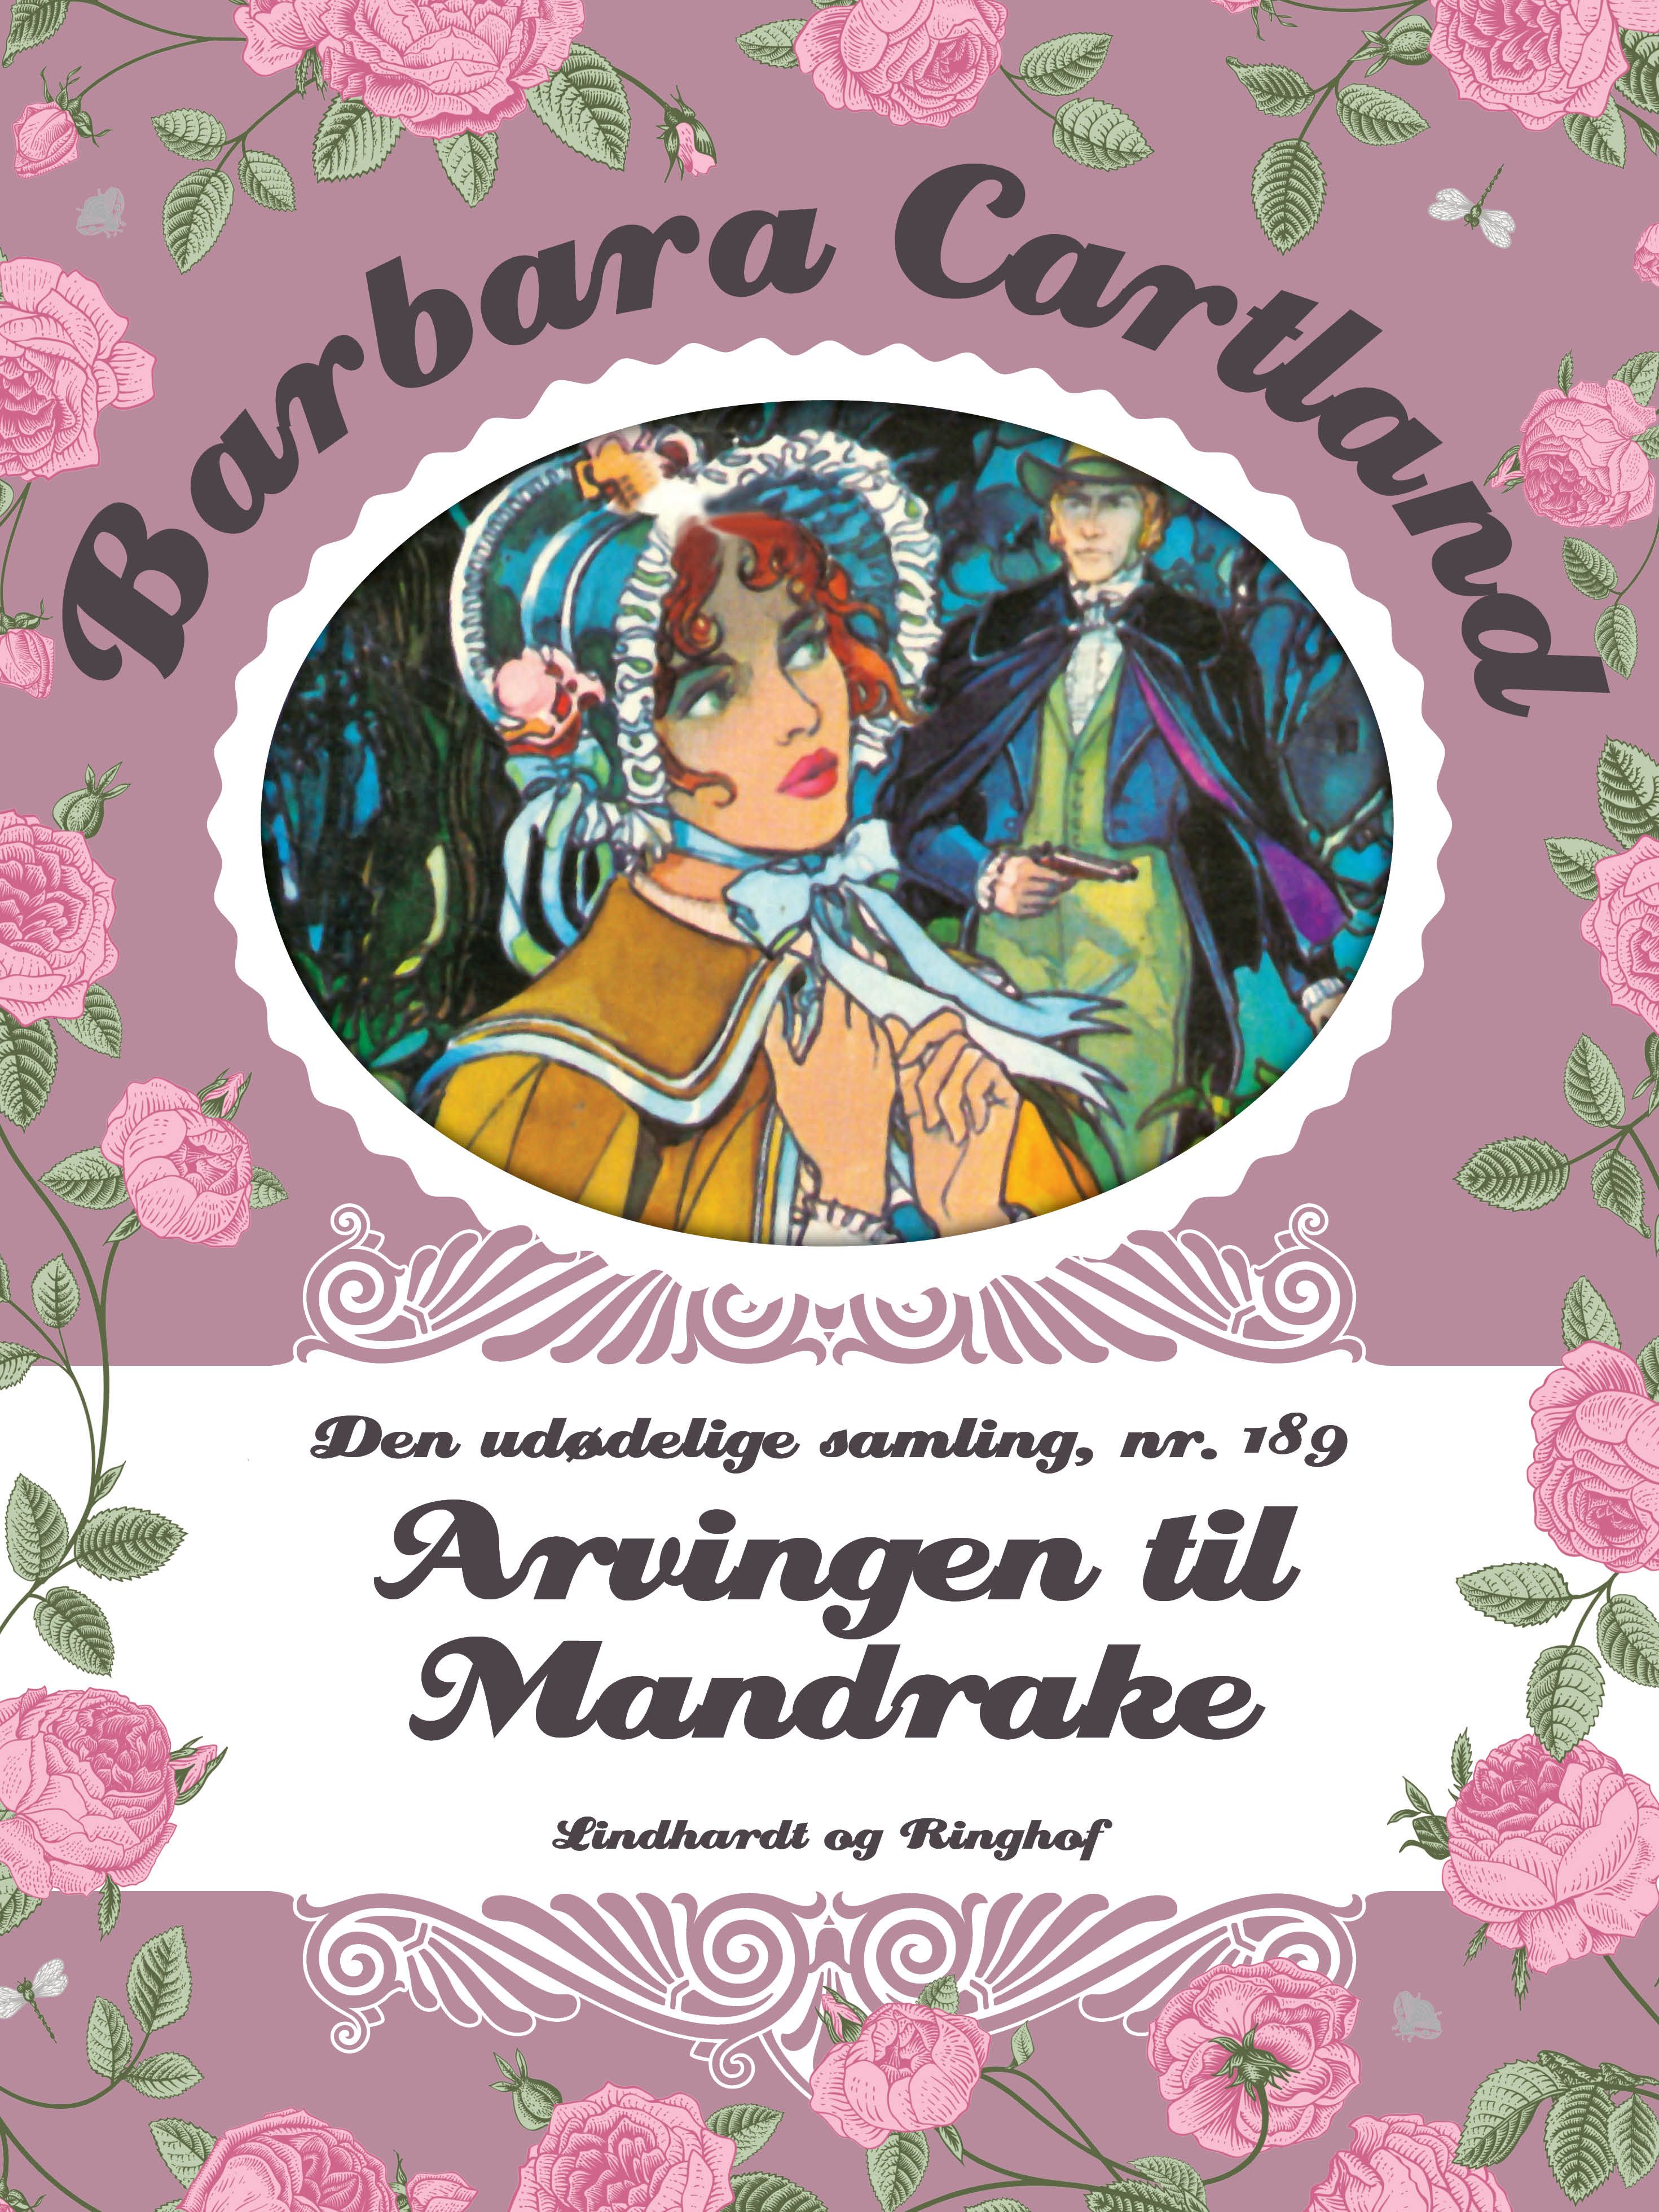 Arvingen til Mandrake, eBook by Barbara Cartland